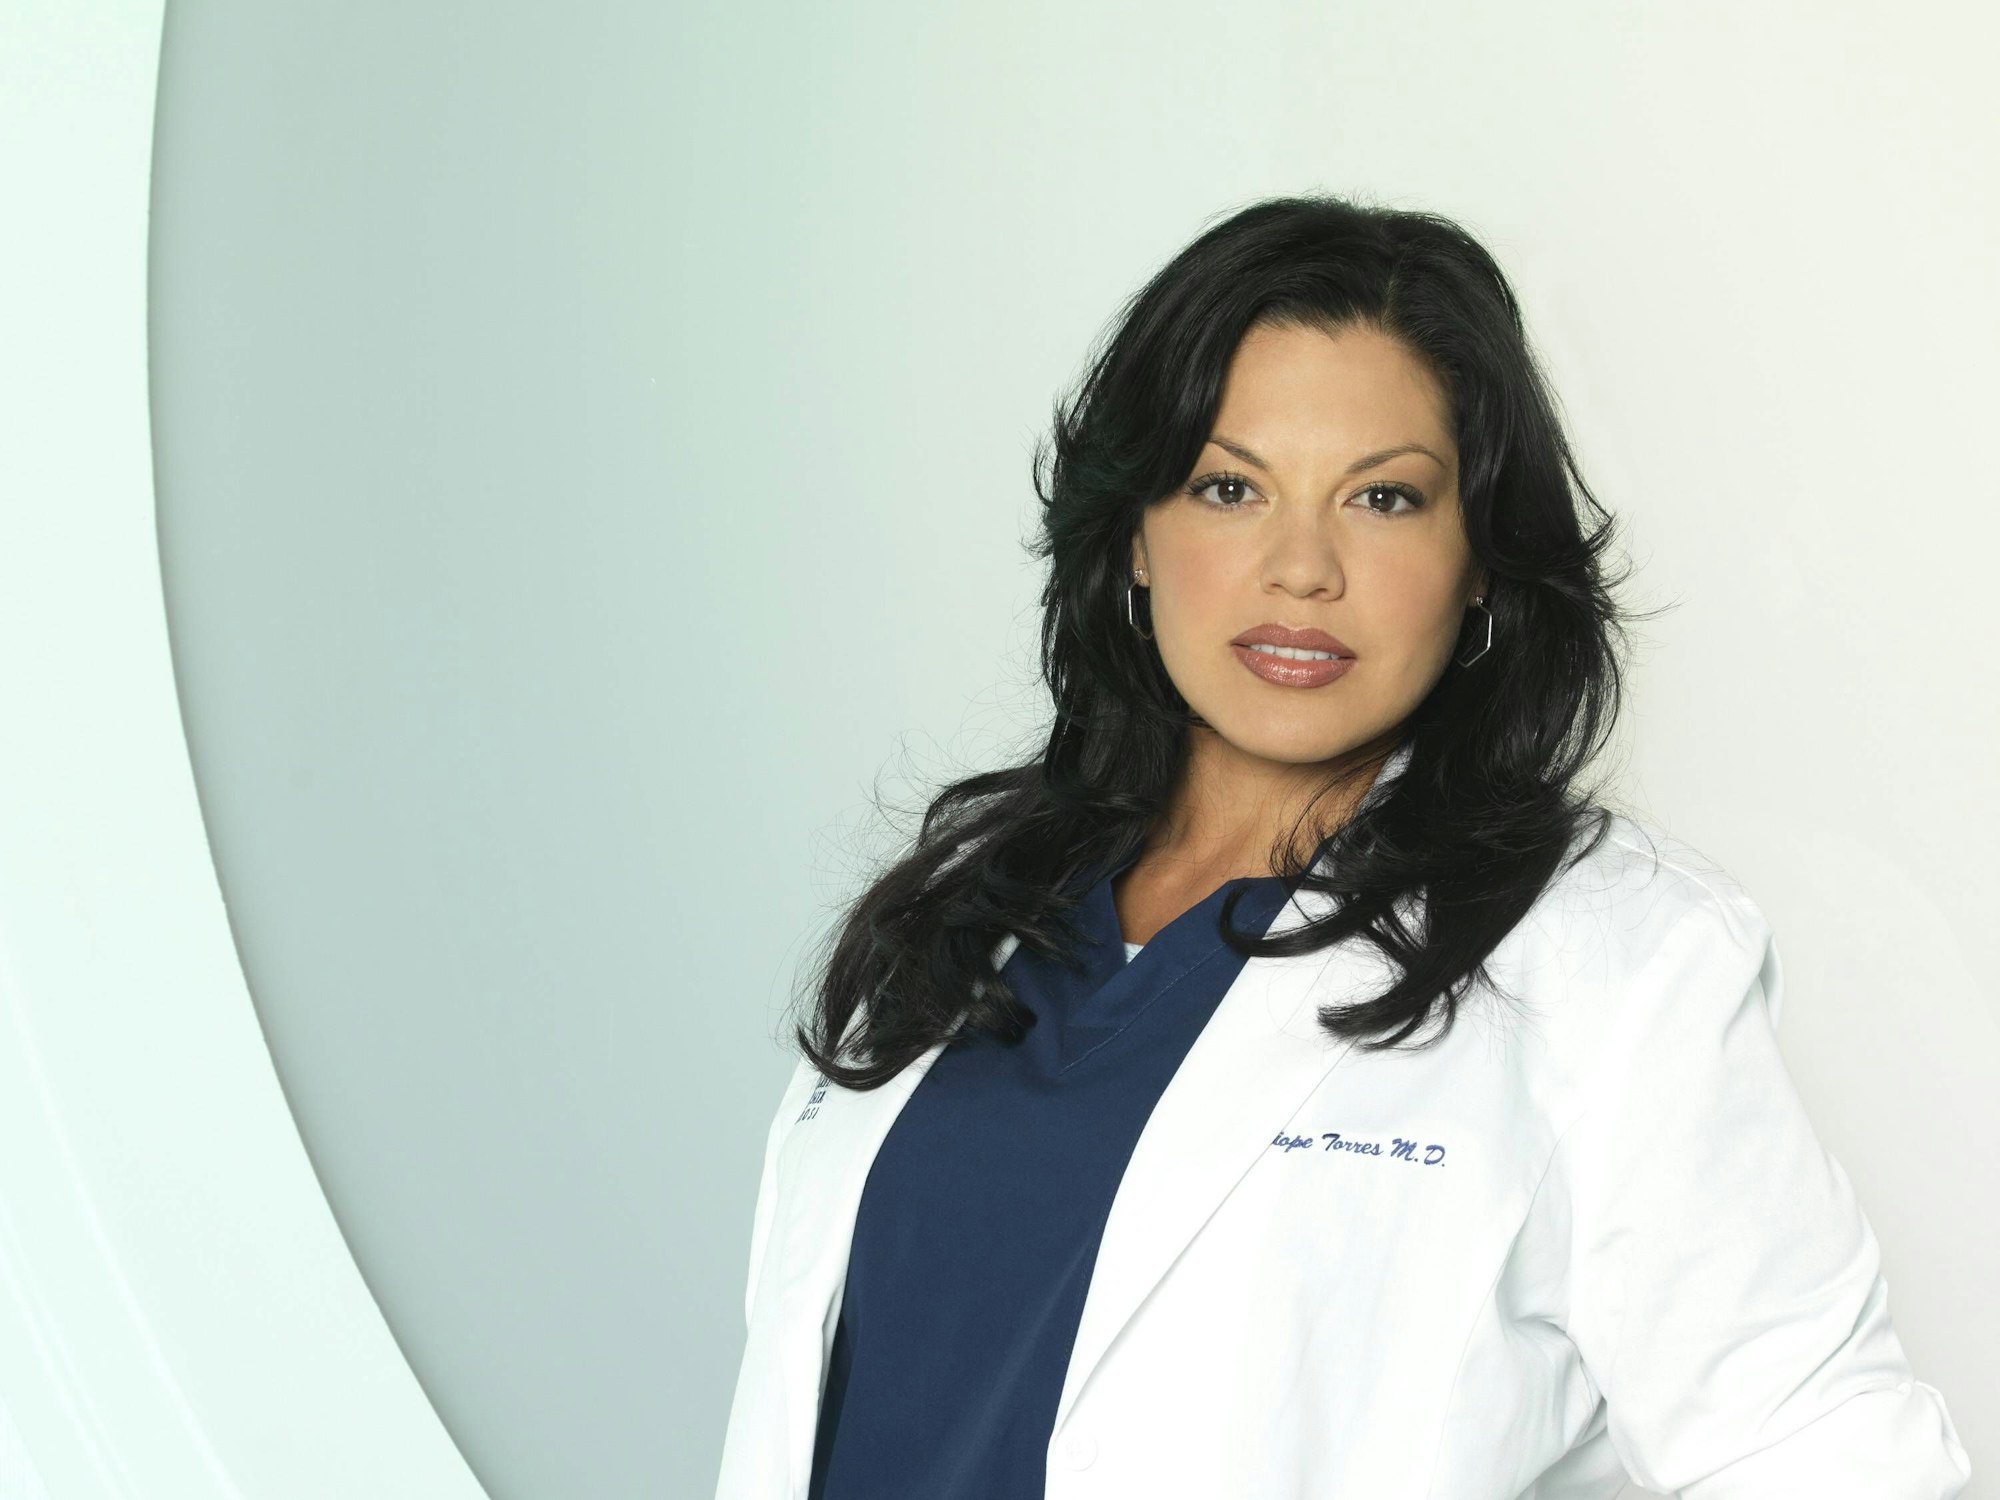 In Deutschland wurde Sara Ramirez vor allem durch ihre Rolle in der Krankenhausserie „Grey’s Anatomy“ bekannt. Als Dr. Calliope Iphegenia ‚Callie‘ Torres macht sie dort die Verwandlung von einer heterosexuellen zu einer homosexuellen Frau durch.